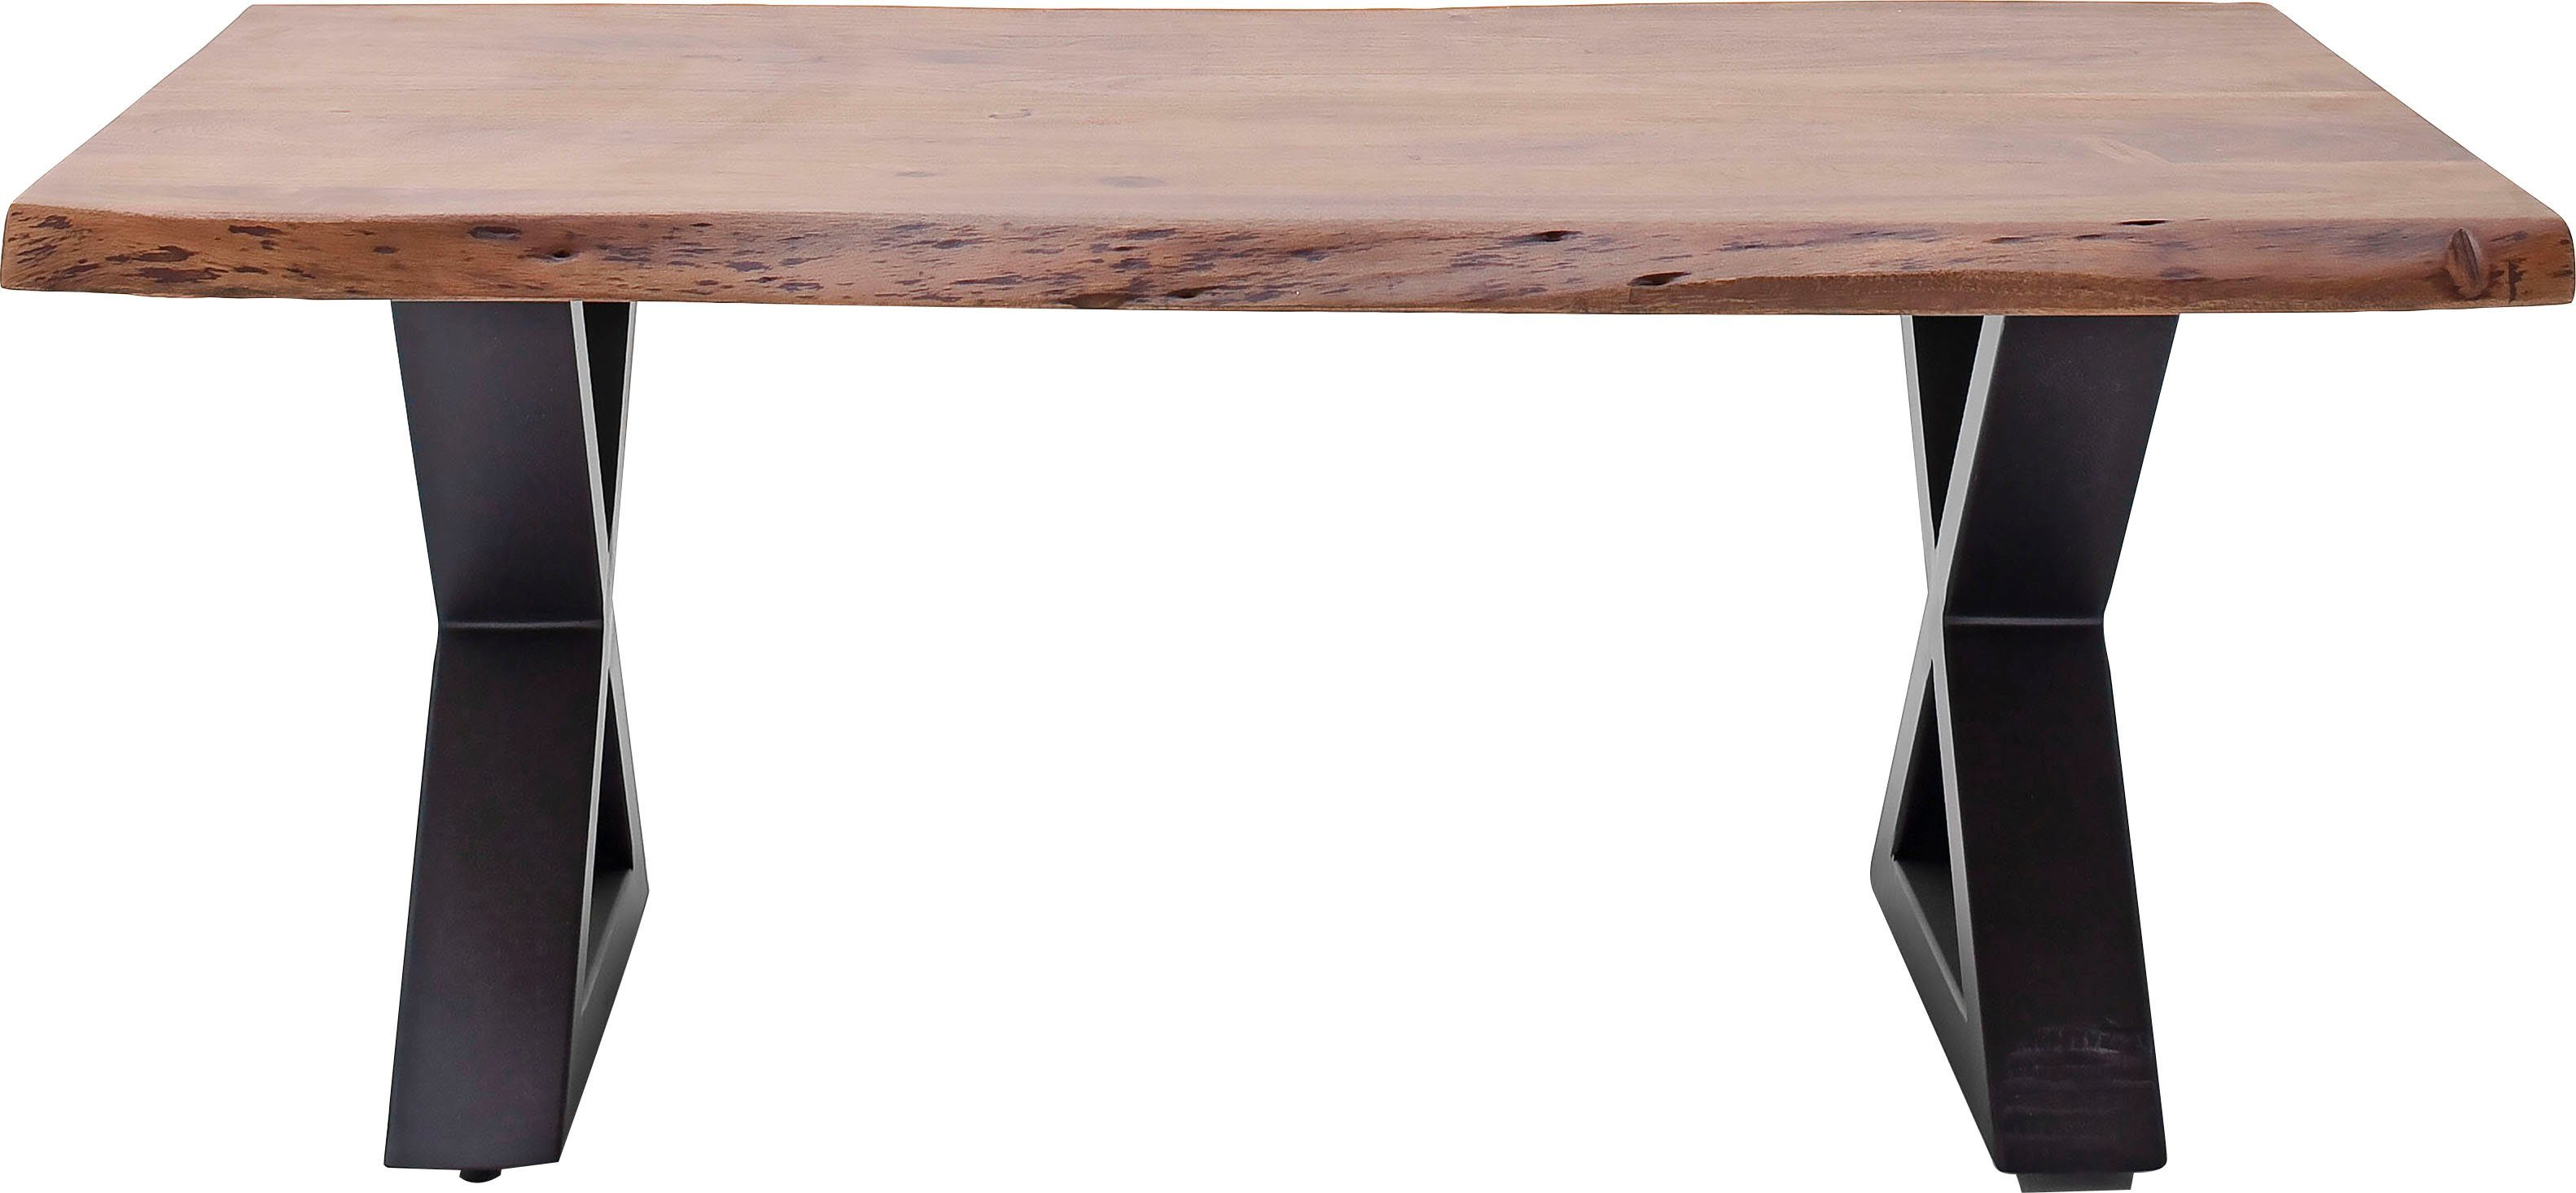 Walnuss und Anthrazit Couchtisch | Massivholz Löchern und MCA mit Walnuss lackiert | Couchtisch natürlichen furniture Baumkante Rissen Cartagena,